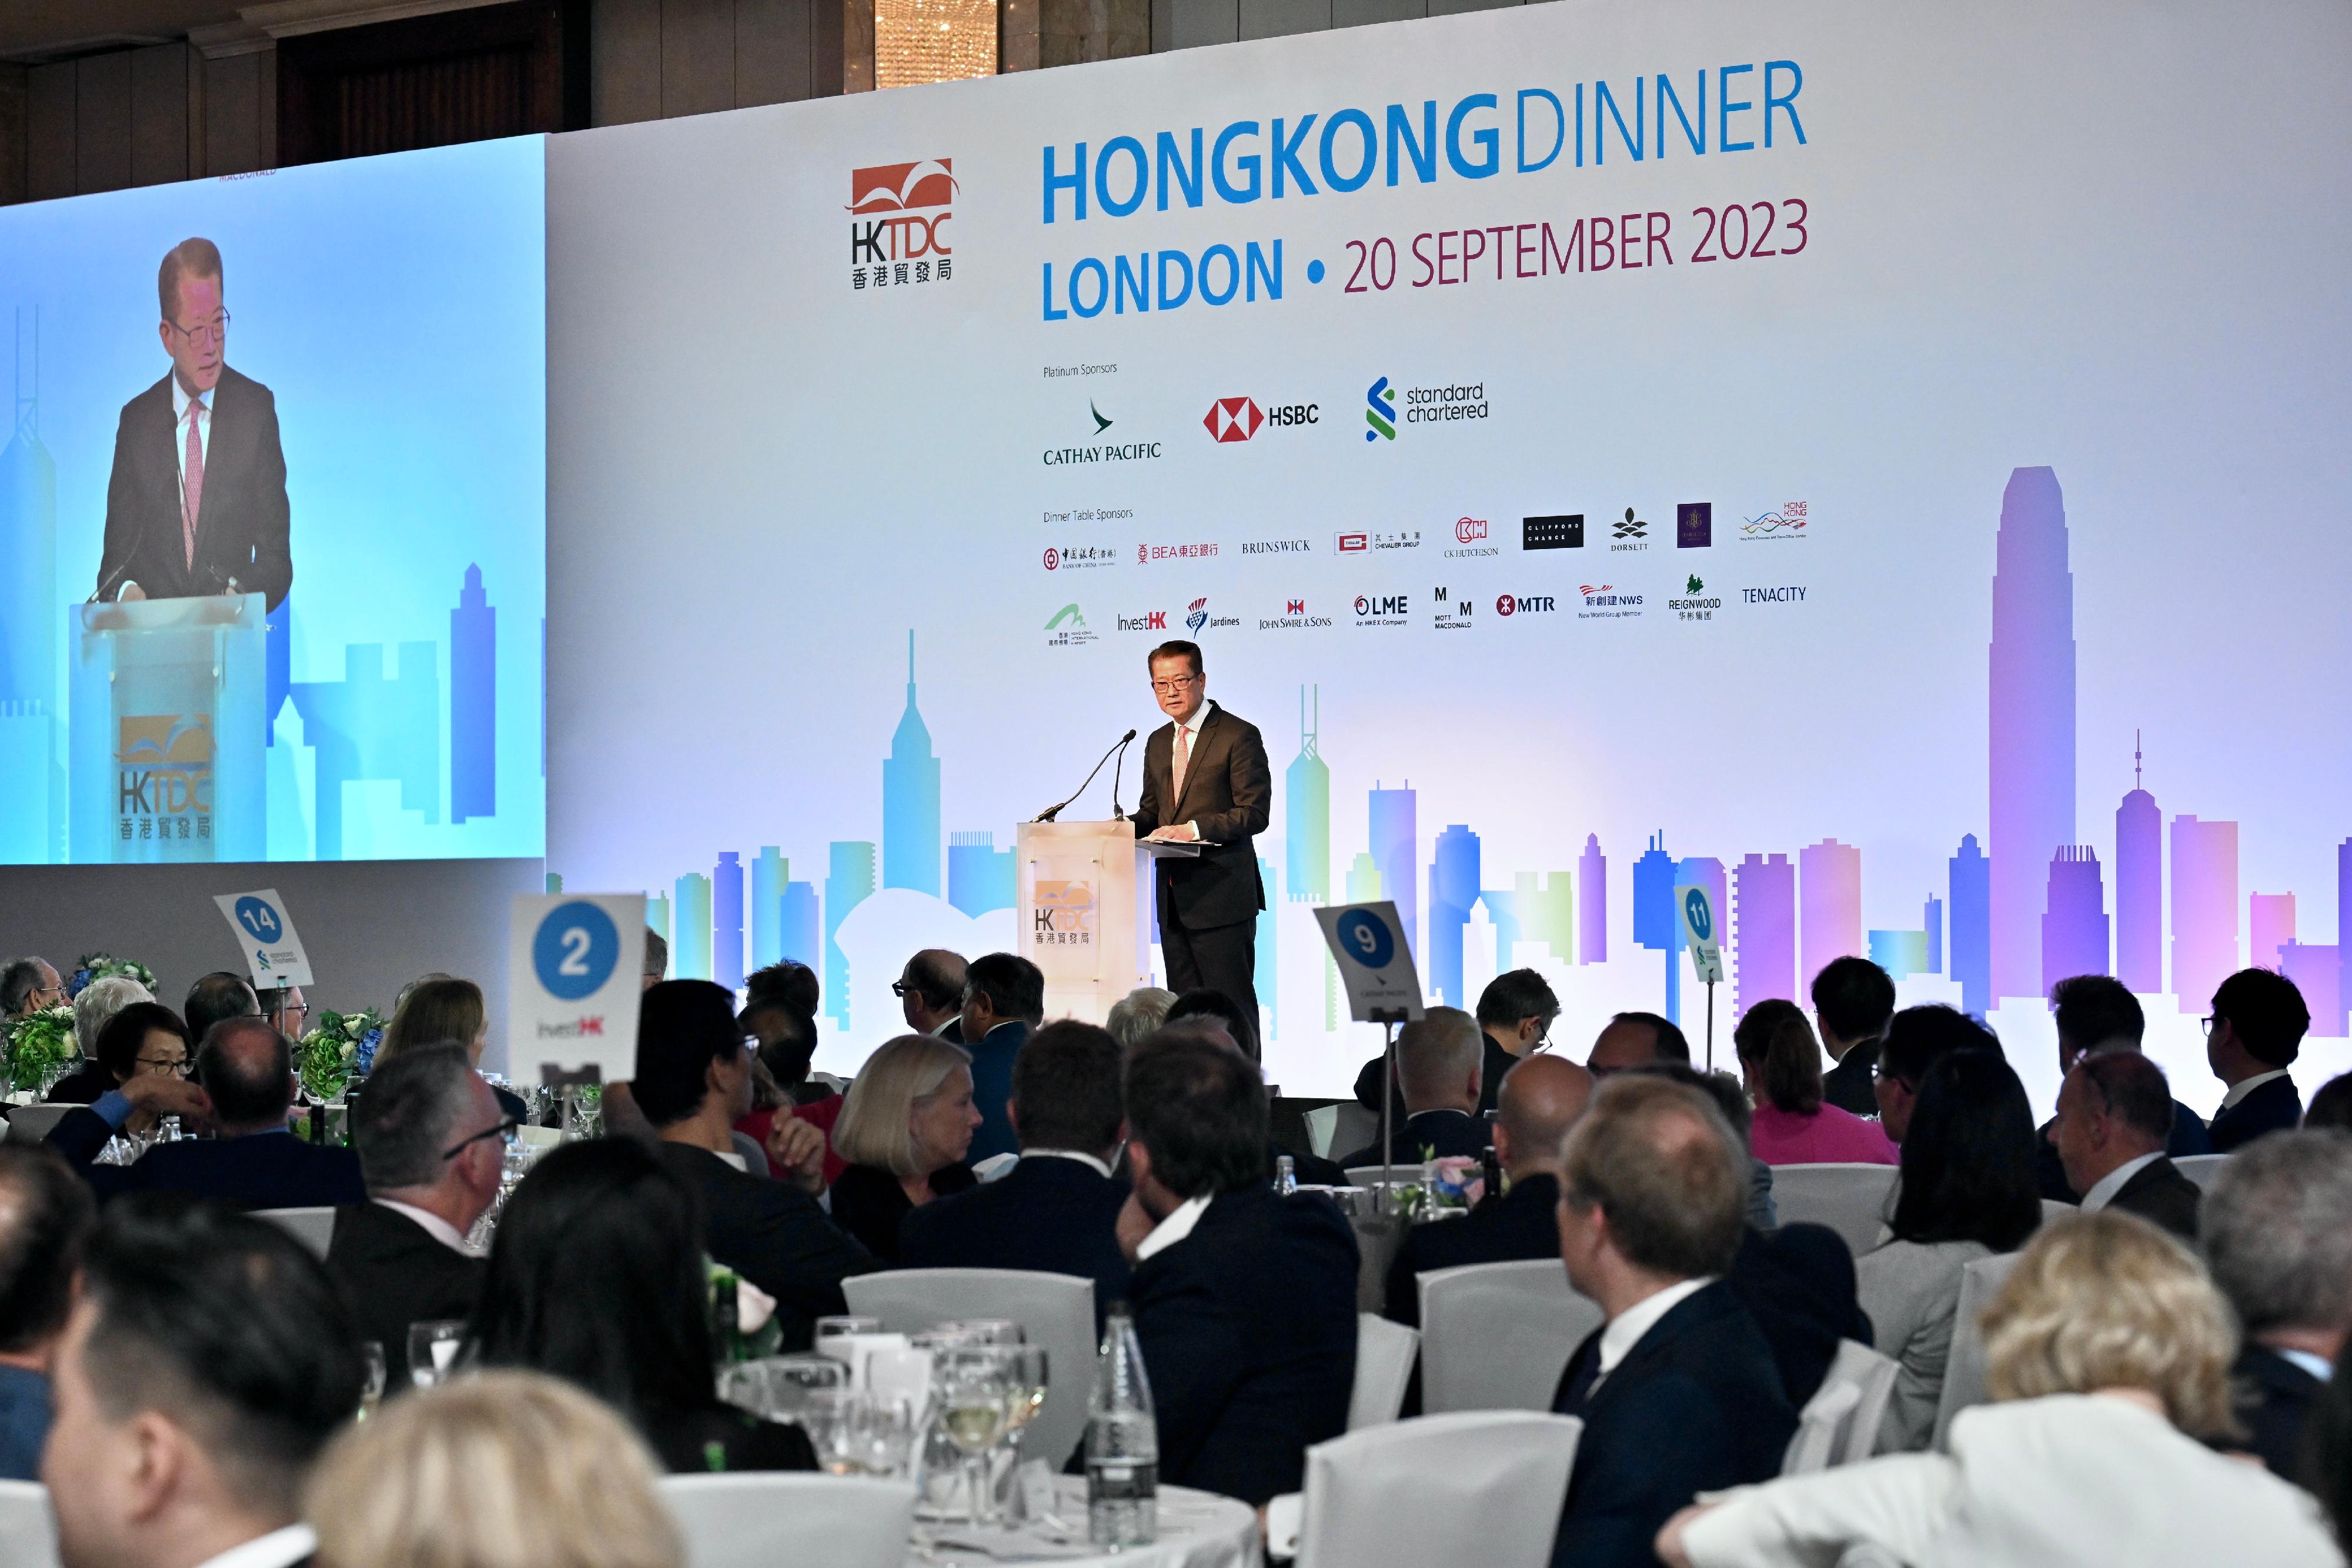 財政司司長陳茂波昨日（倫敦時間九月二十日）抵達倫敦，展開英國訪問行程，並出席由香港貿易發展局舉辦的「香港晚宴」。圖示陳茂波在晚宴上發表主題演講。